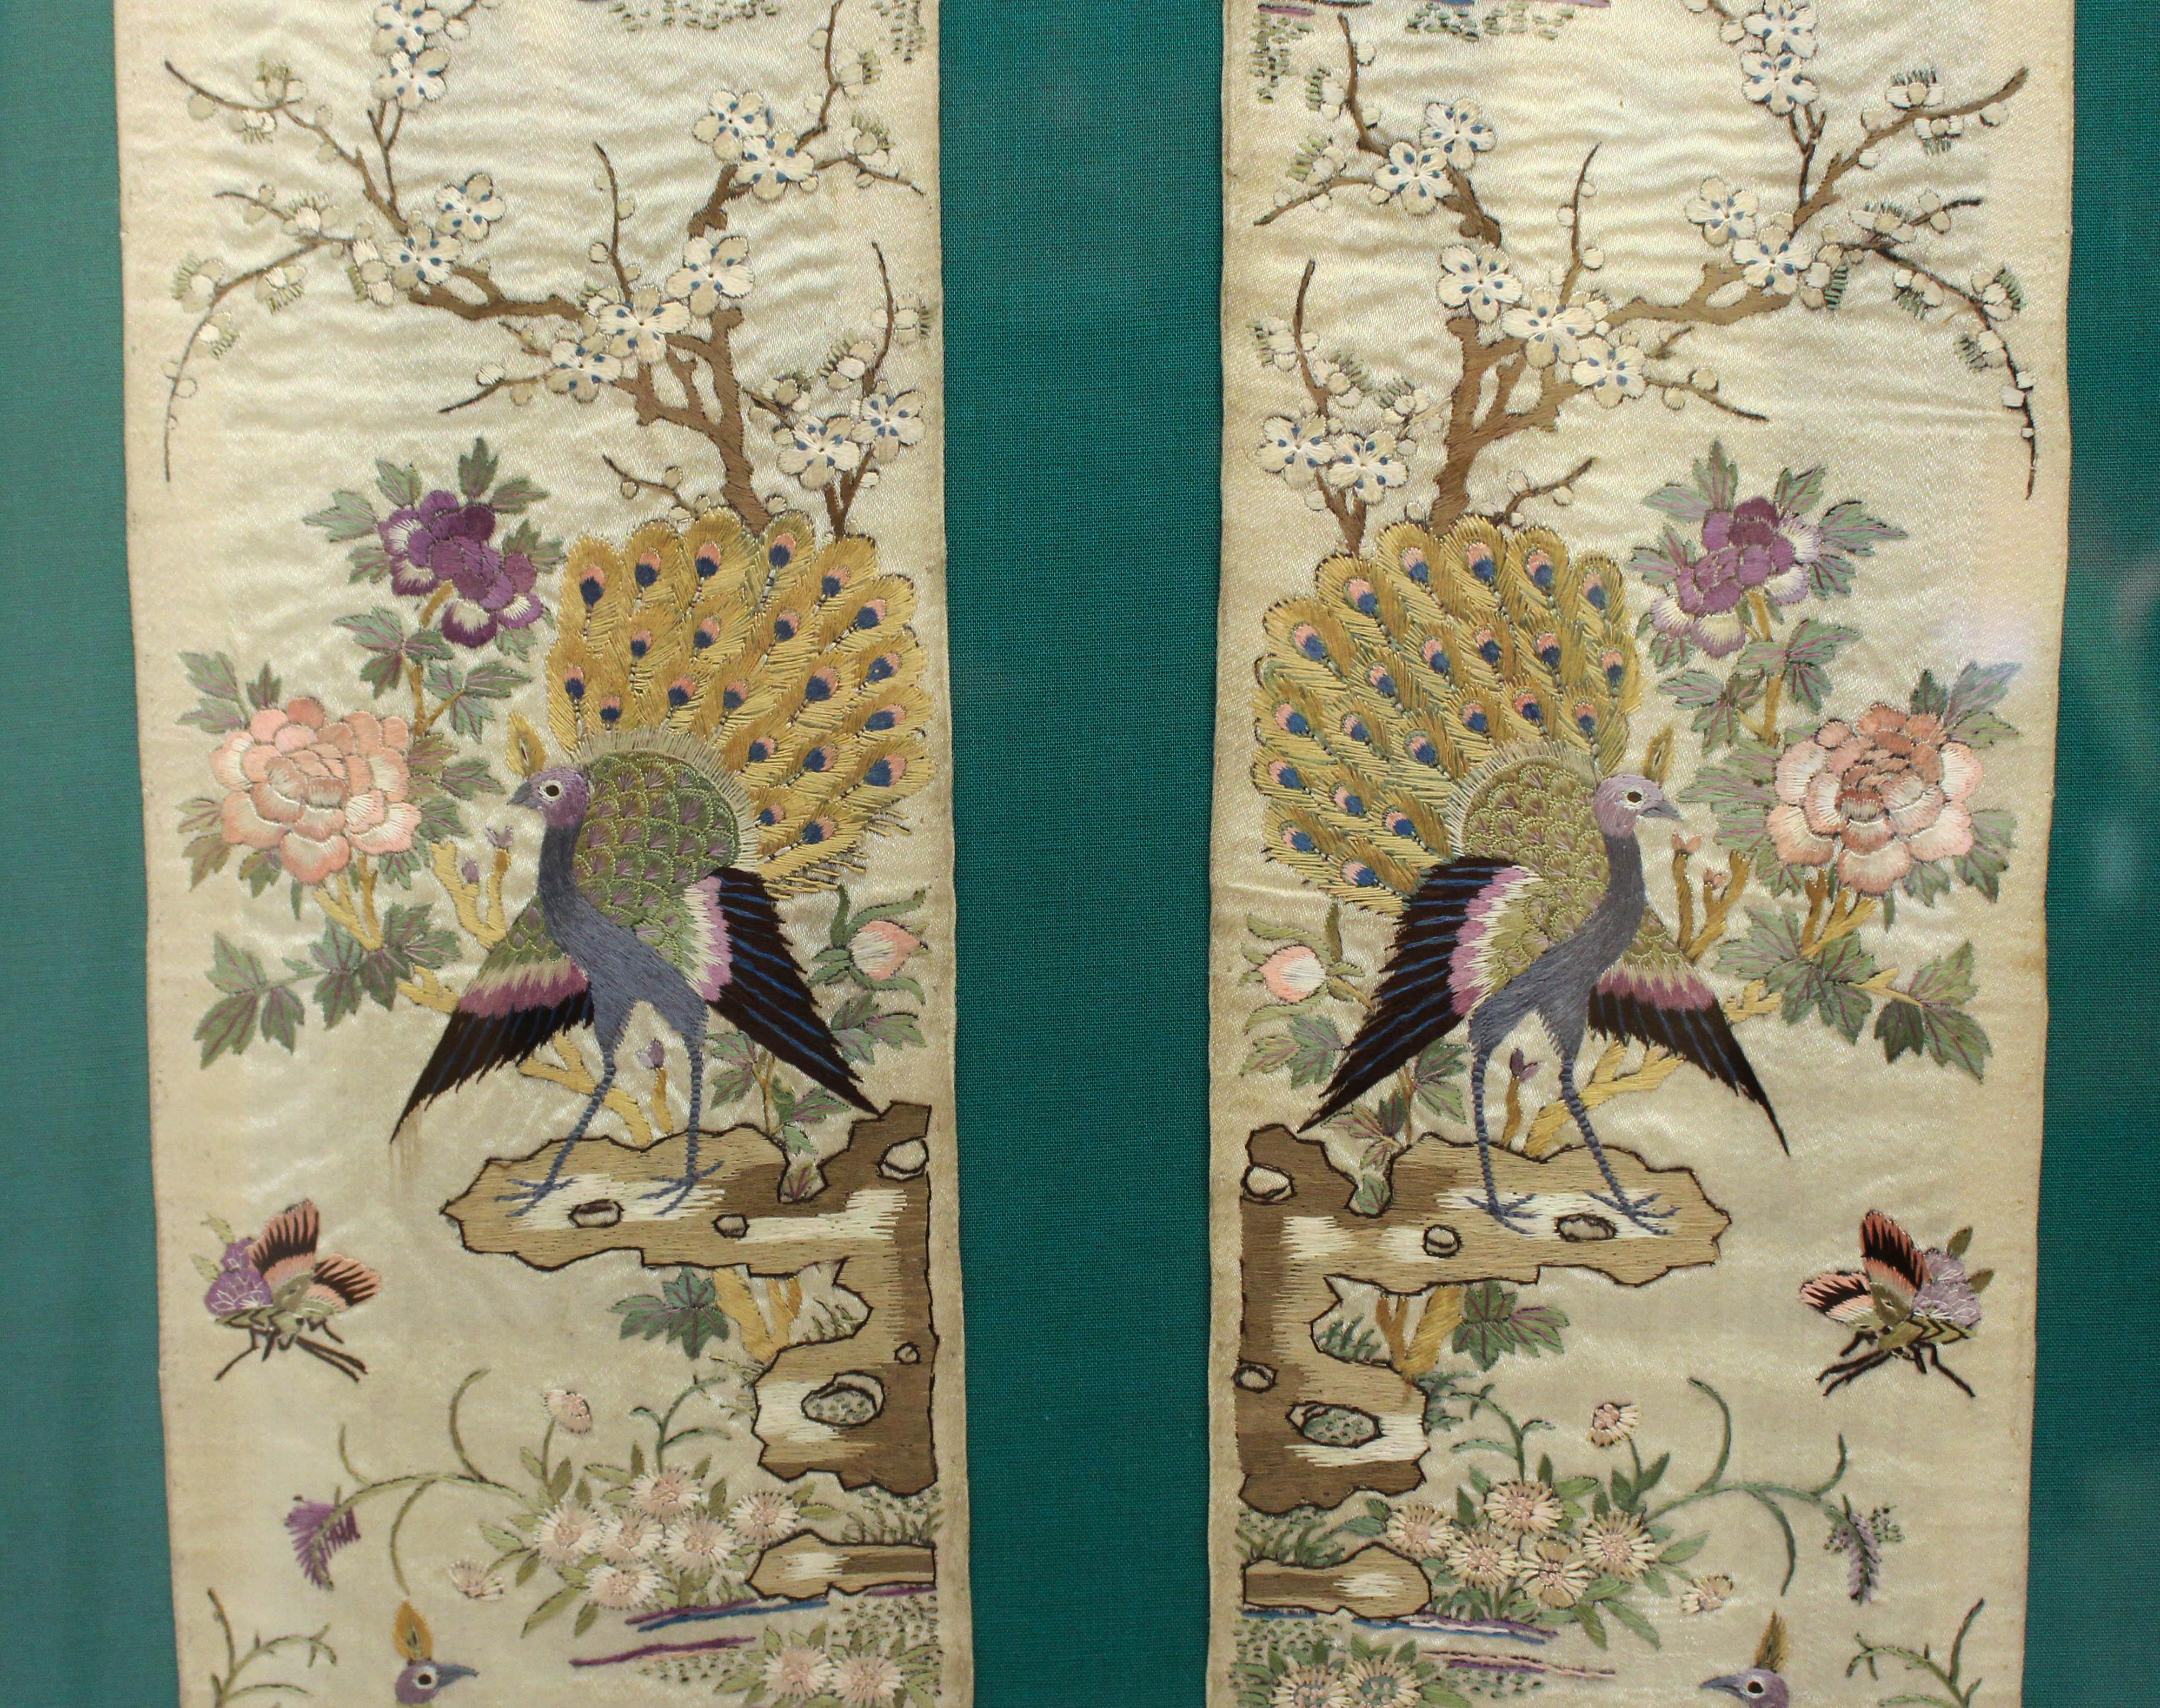 Une paire encadrée de bandes de manches en soie japonaise, fin 19e-début 20e siècle. Brodé en soie avec des pins, des grues, des paons, des poules d'eau, des oiseaux et des papillons. Provenance : Dr. Hughes McCormick Smith (1865-1941), naturaliste,